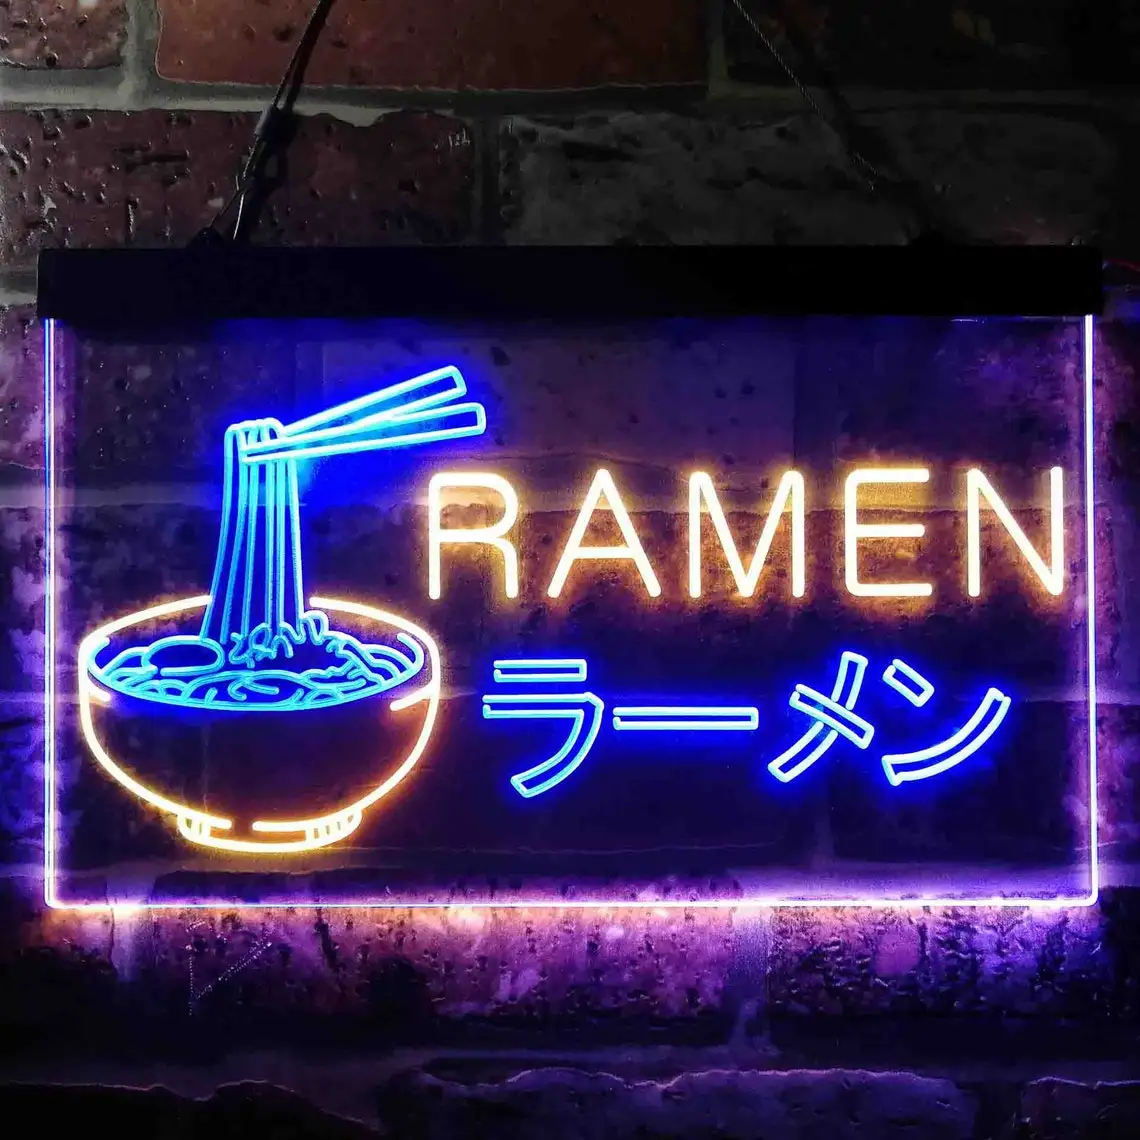 Ramen Japanese Noodles Shop Display Dual Color LED Neon Sign st6-i3613